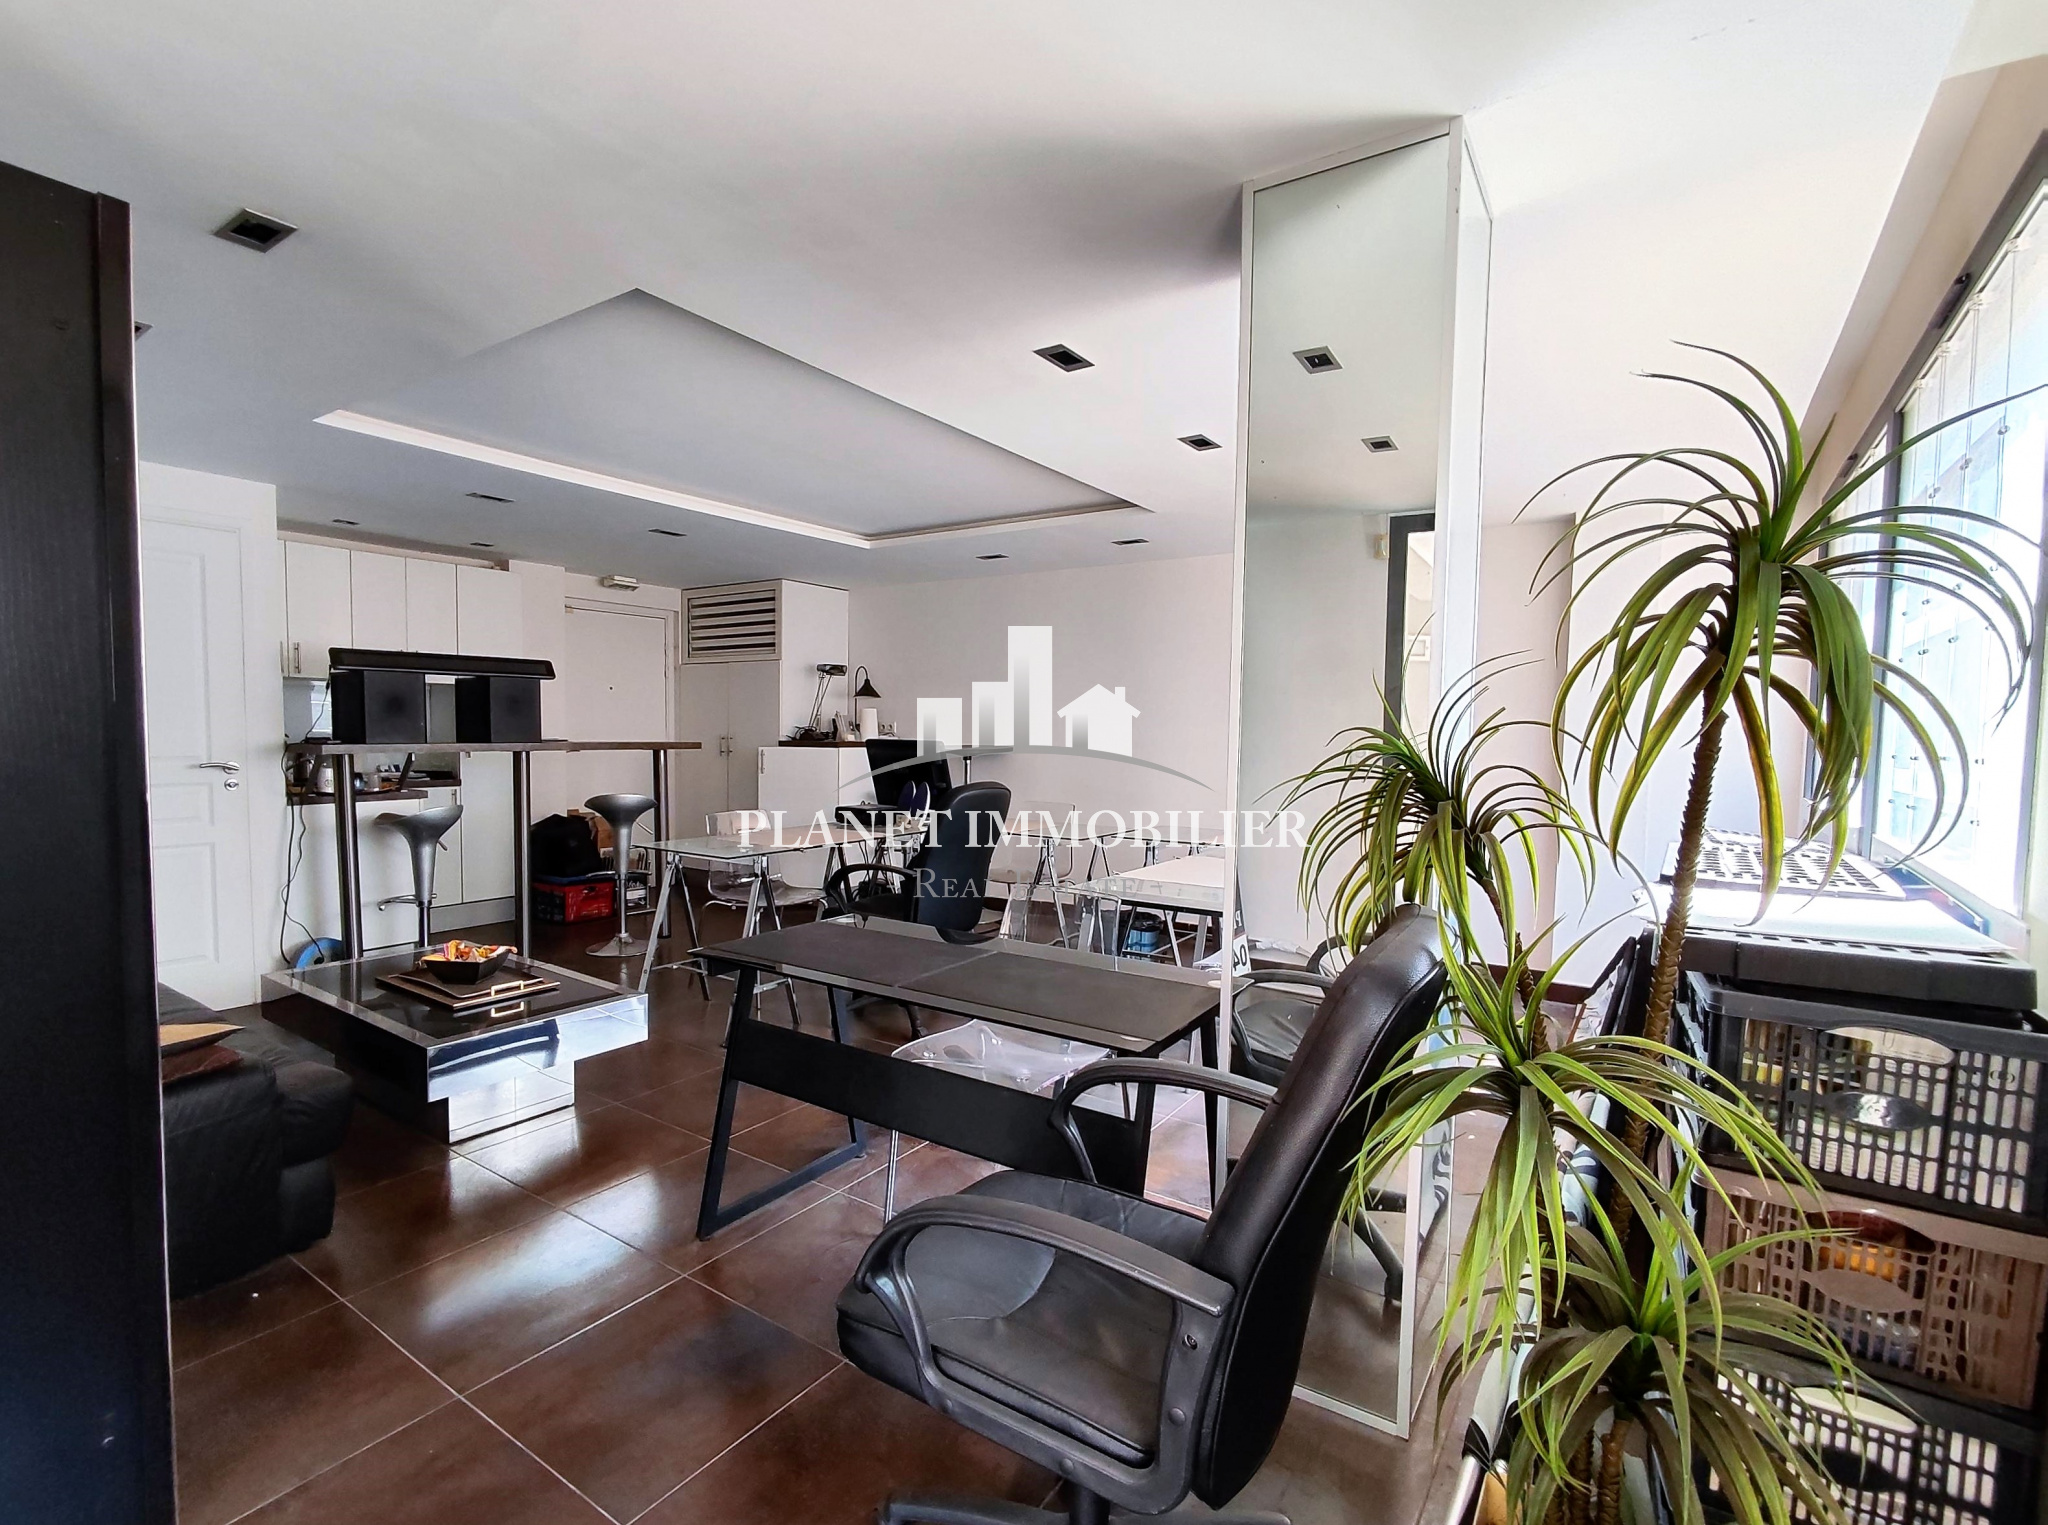 Vente Appartement 39m² 1 Pièce à Juan les Pins (06160) - Planet Immobilier